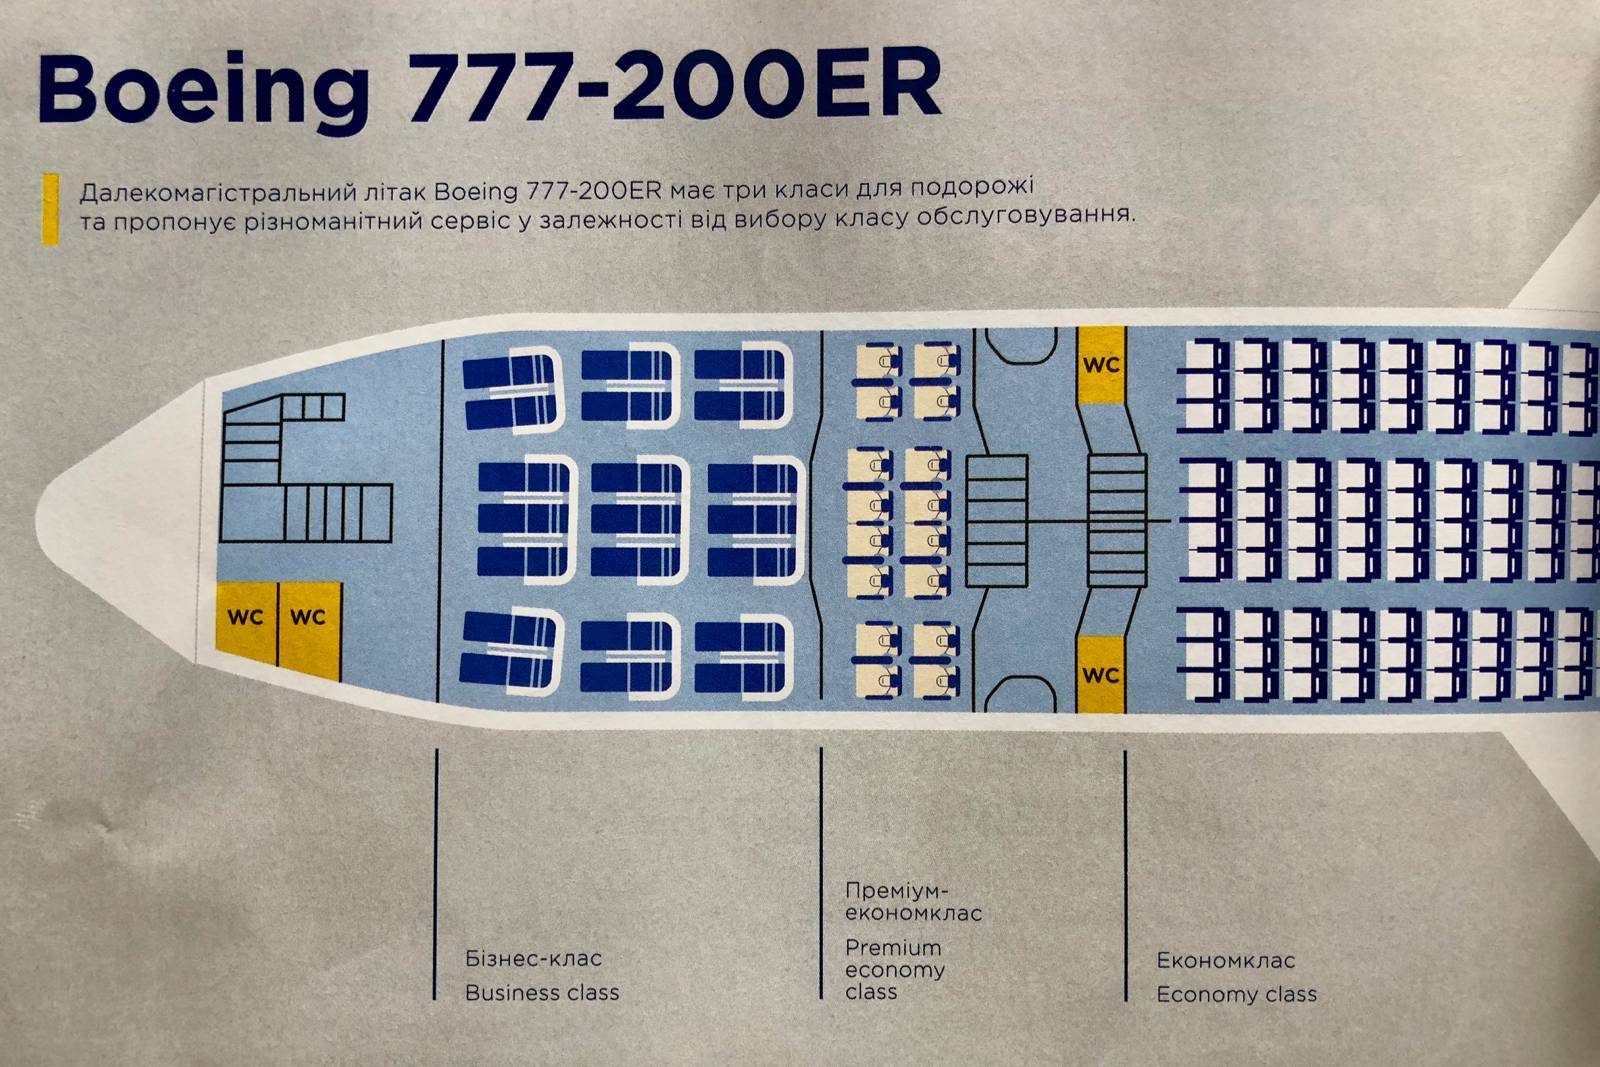 Boeing 777 расположение. Боинг 777-200er салон. Боинг 777-200 er расположение посадочных мест схема. Компоновка сидений в Боинг 777 -200. Boeing 777-200er расположение мест.